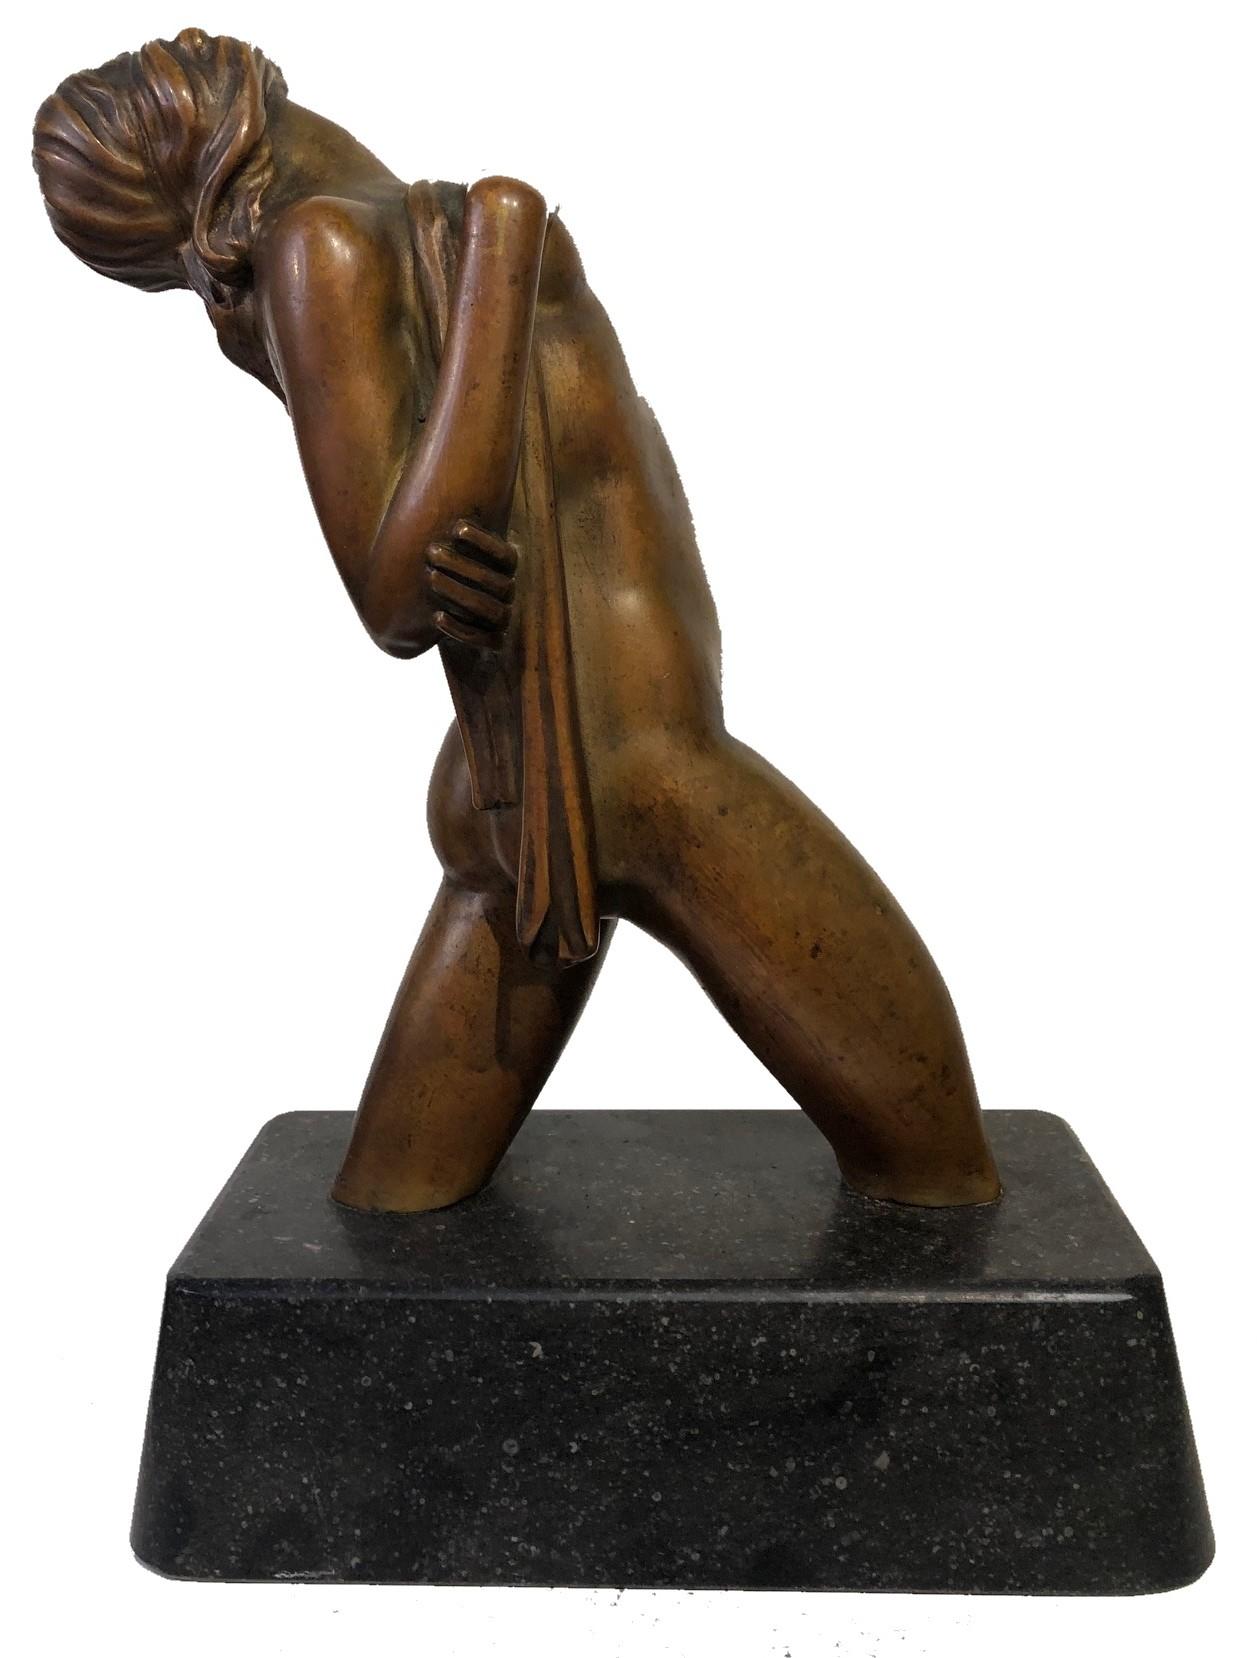 American Art Deco Female Nude Bronze Sculpture by Joseph C. Motto, ca. 1920s  For Sale 2